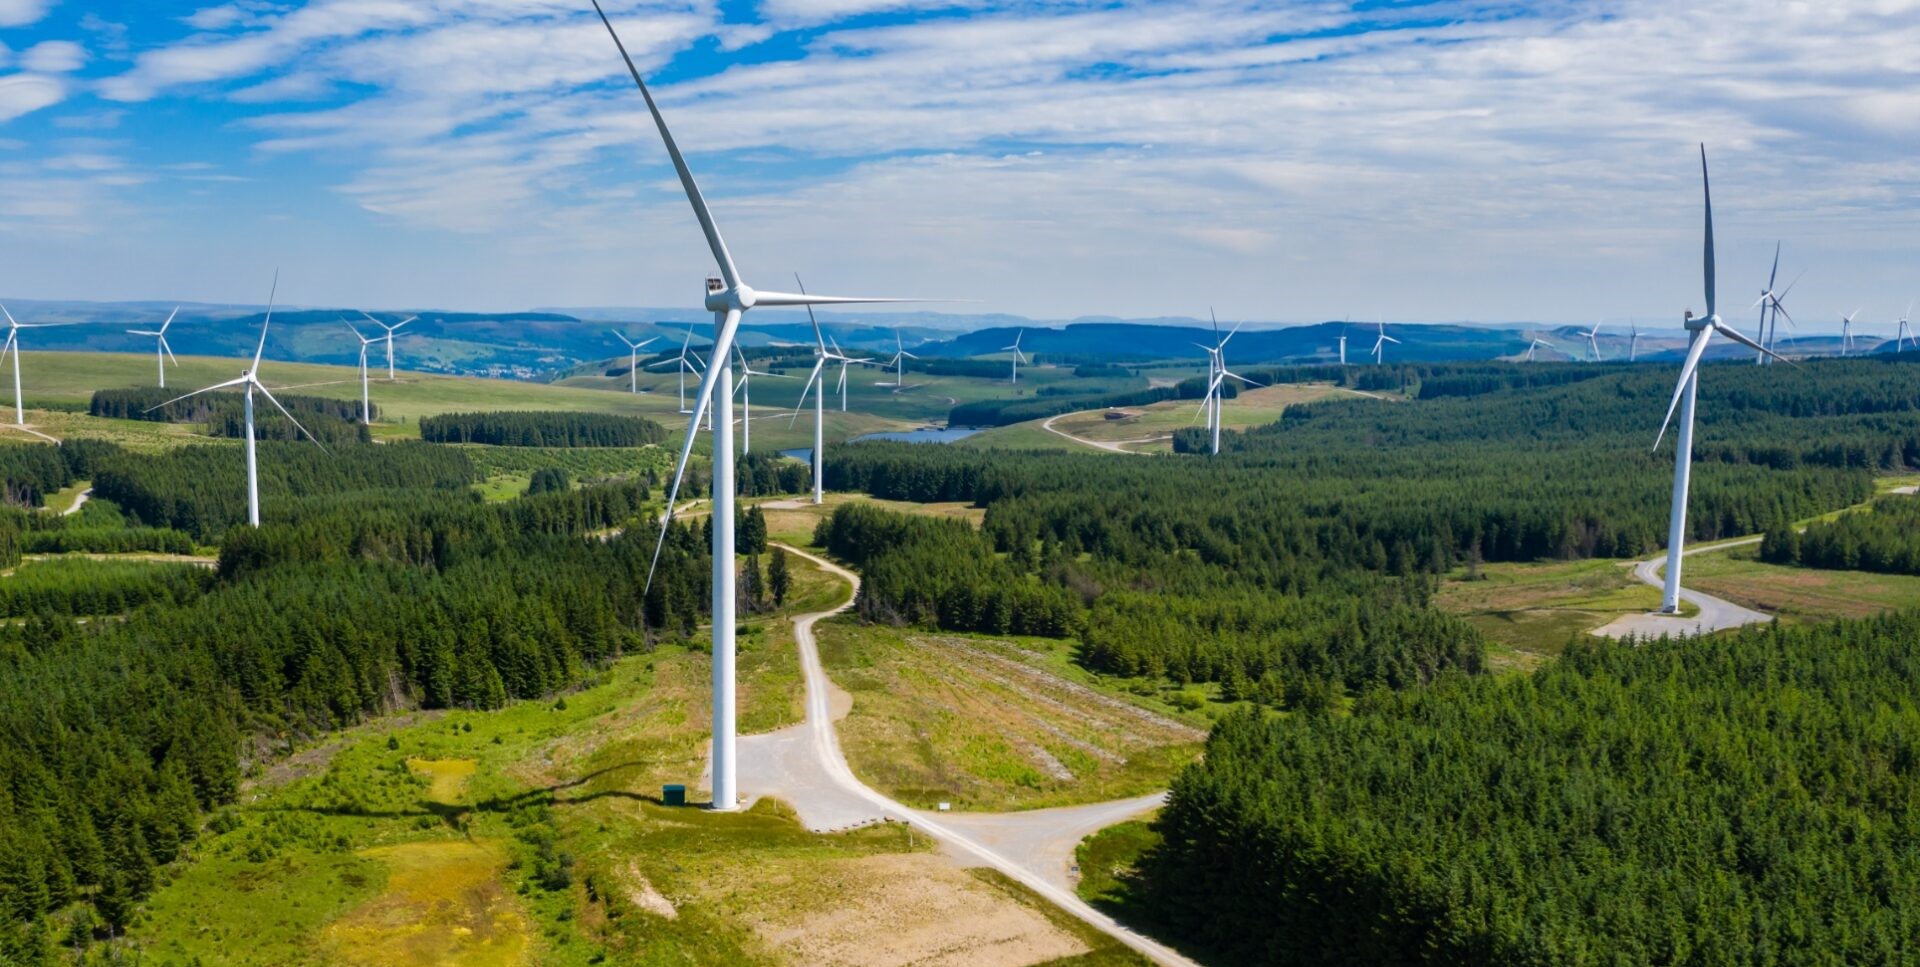 Druga co do wielkości farma wiatrowa w Polsce została uruchomiona przez firmę najbogatszej kobiety w kraju